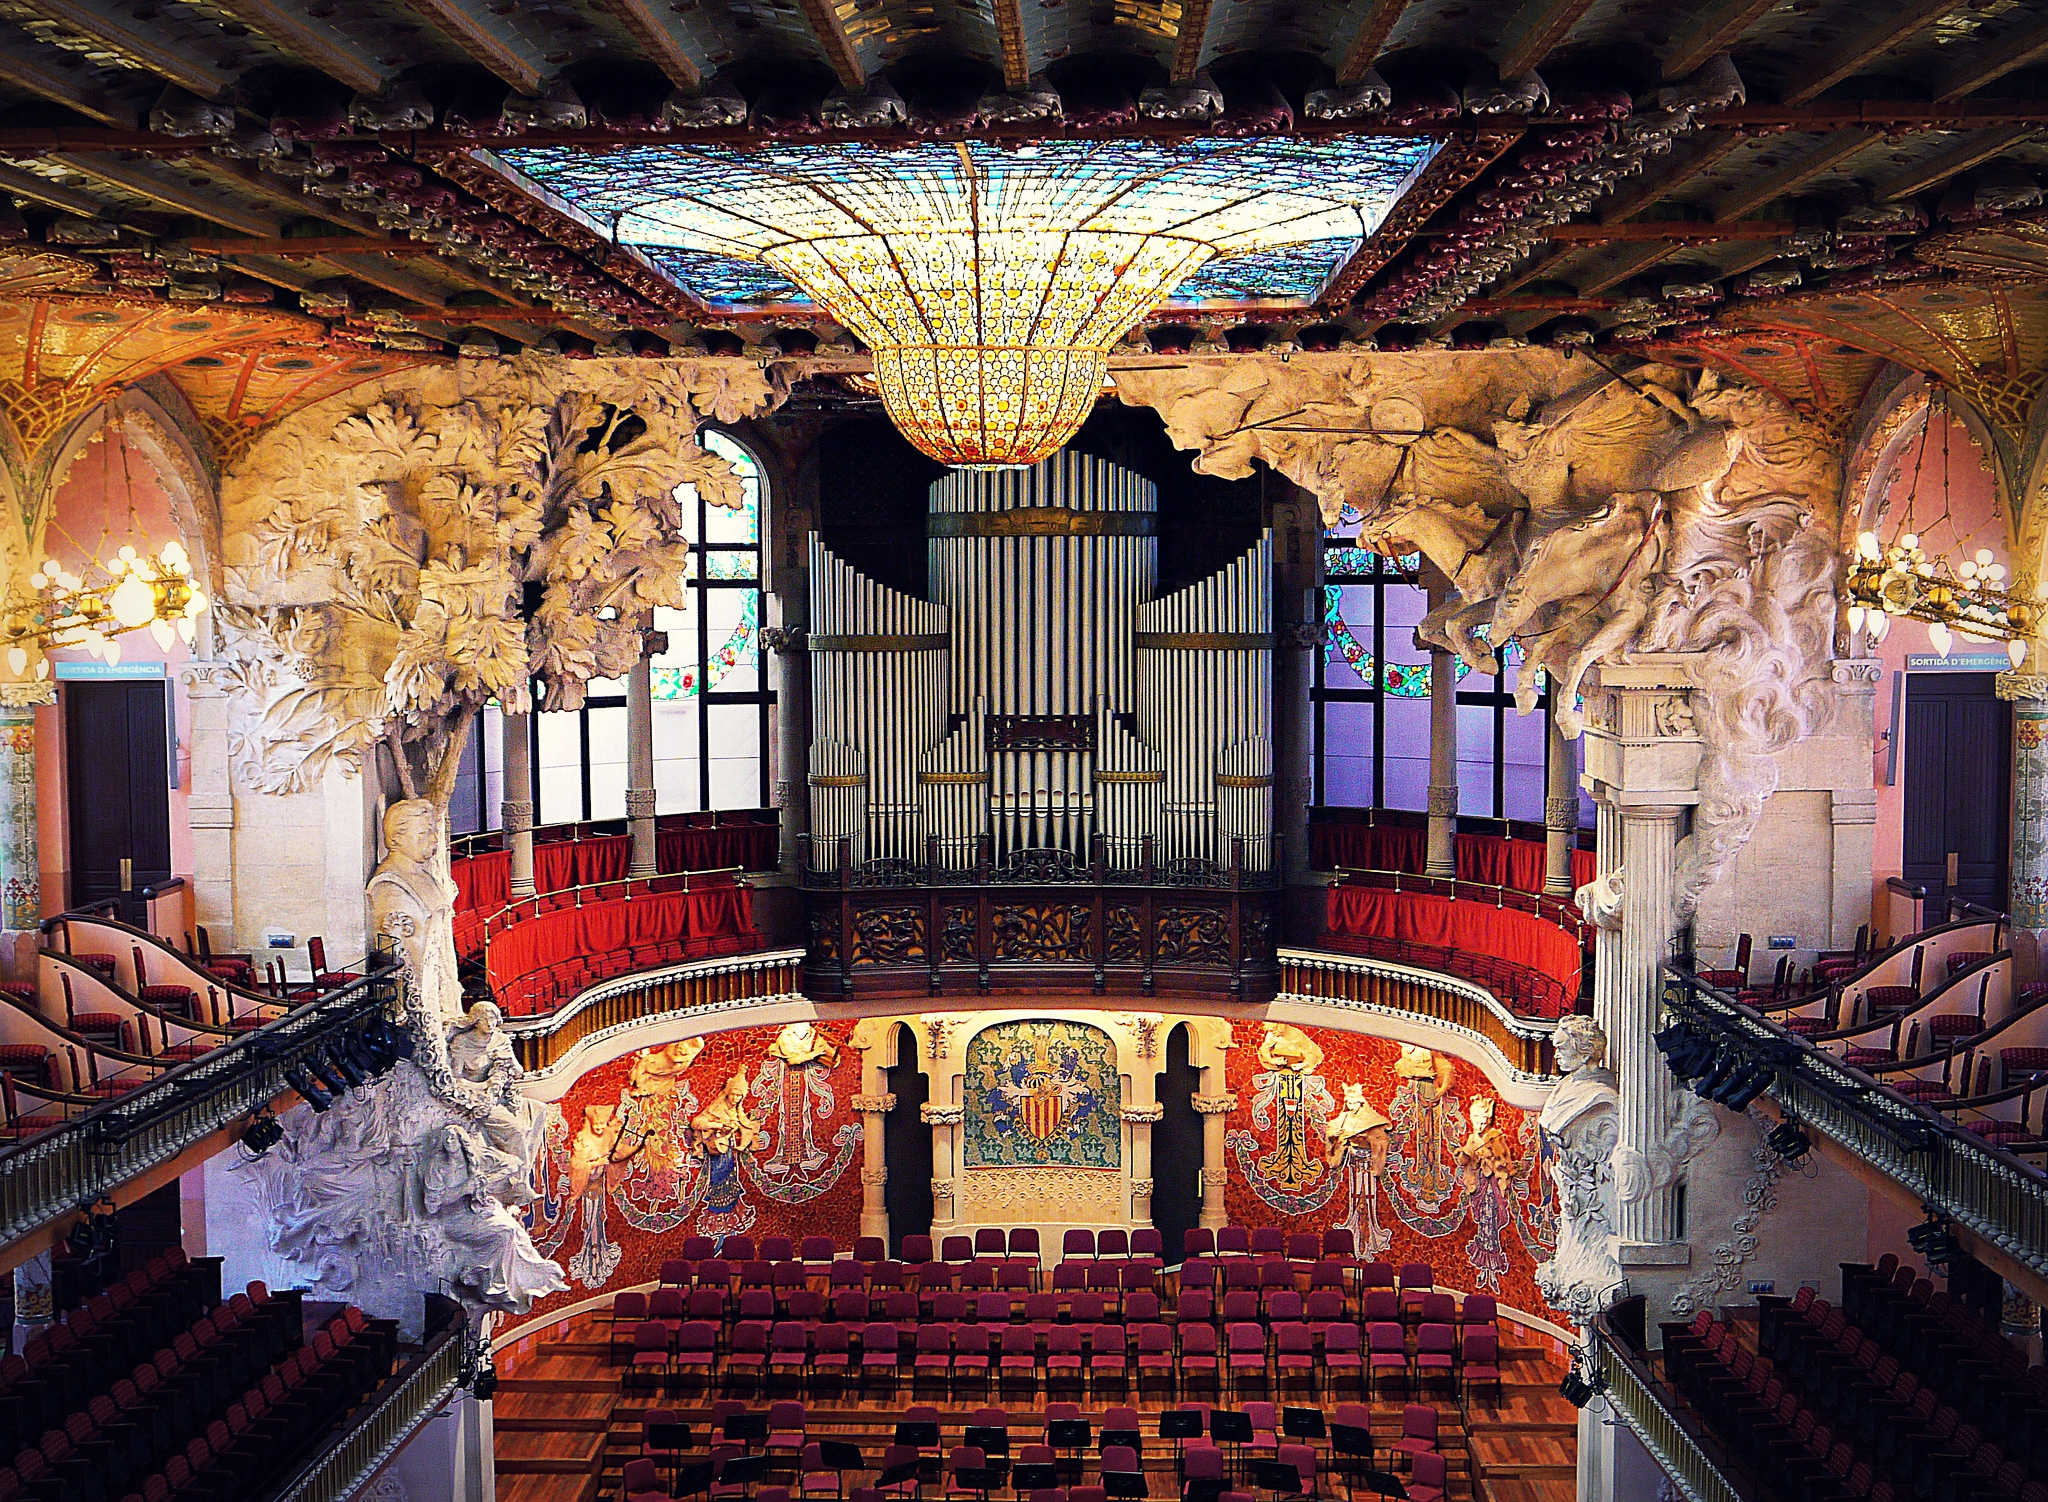 Сайт дворец музыки. Дворец каталонской музыки в Барселоне. Palau de la musica Catalana театр. Дворец каталонской музыки, Испания, Барселона.. Palau de la música Catalana Барселона.